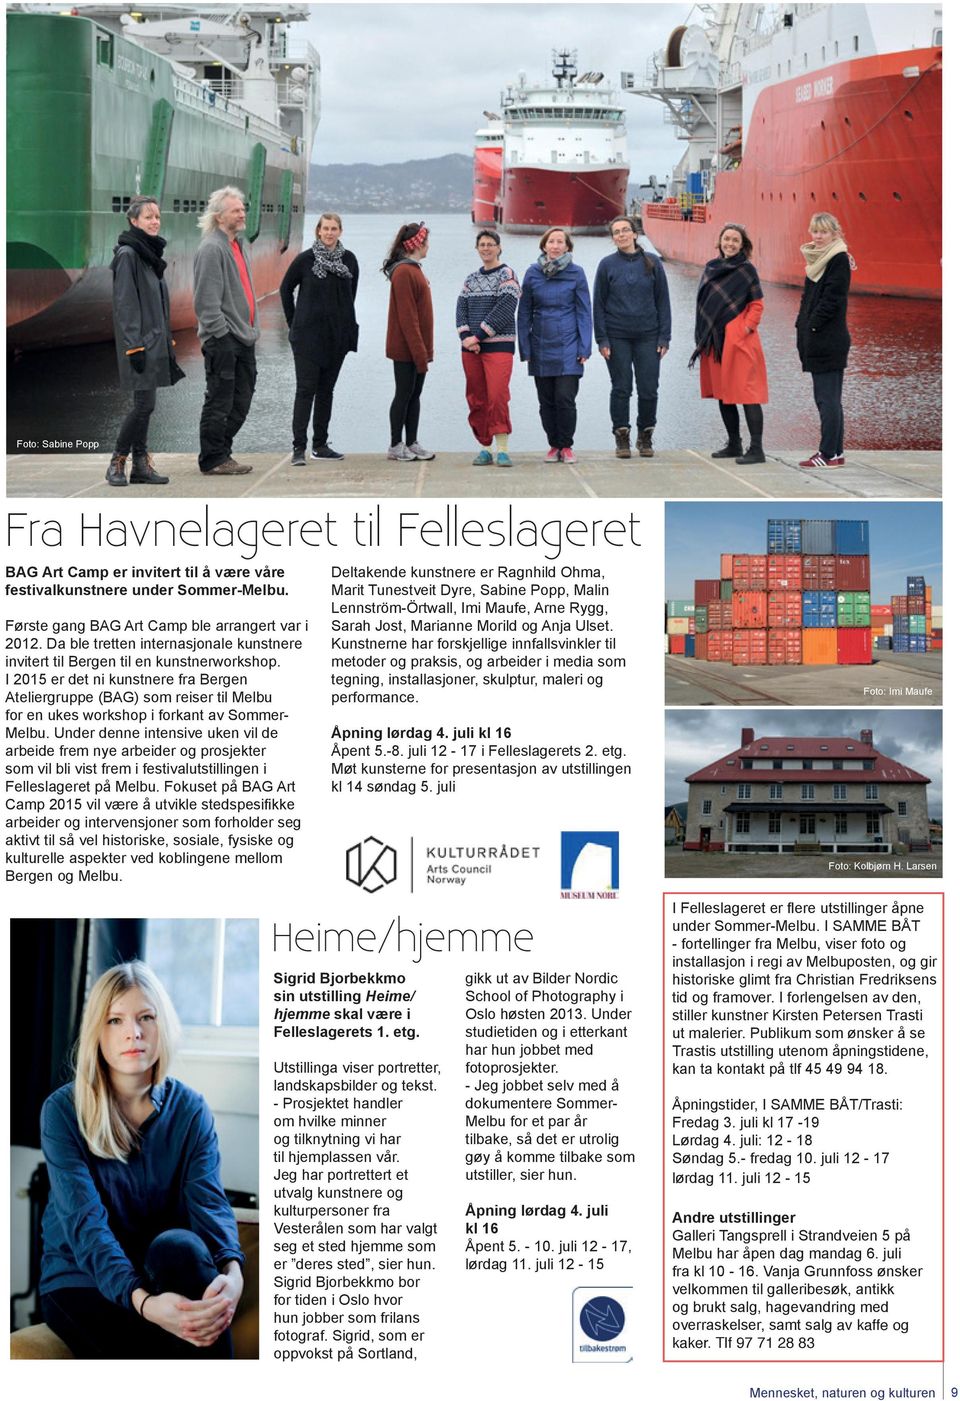 I 2015 er det ni kunstnere fra Bergen Ateliergruppe (BAG) som reiser til Melbu for en ukes workshop i forkant av Sommer- Melbu.